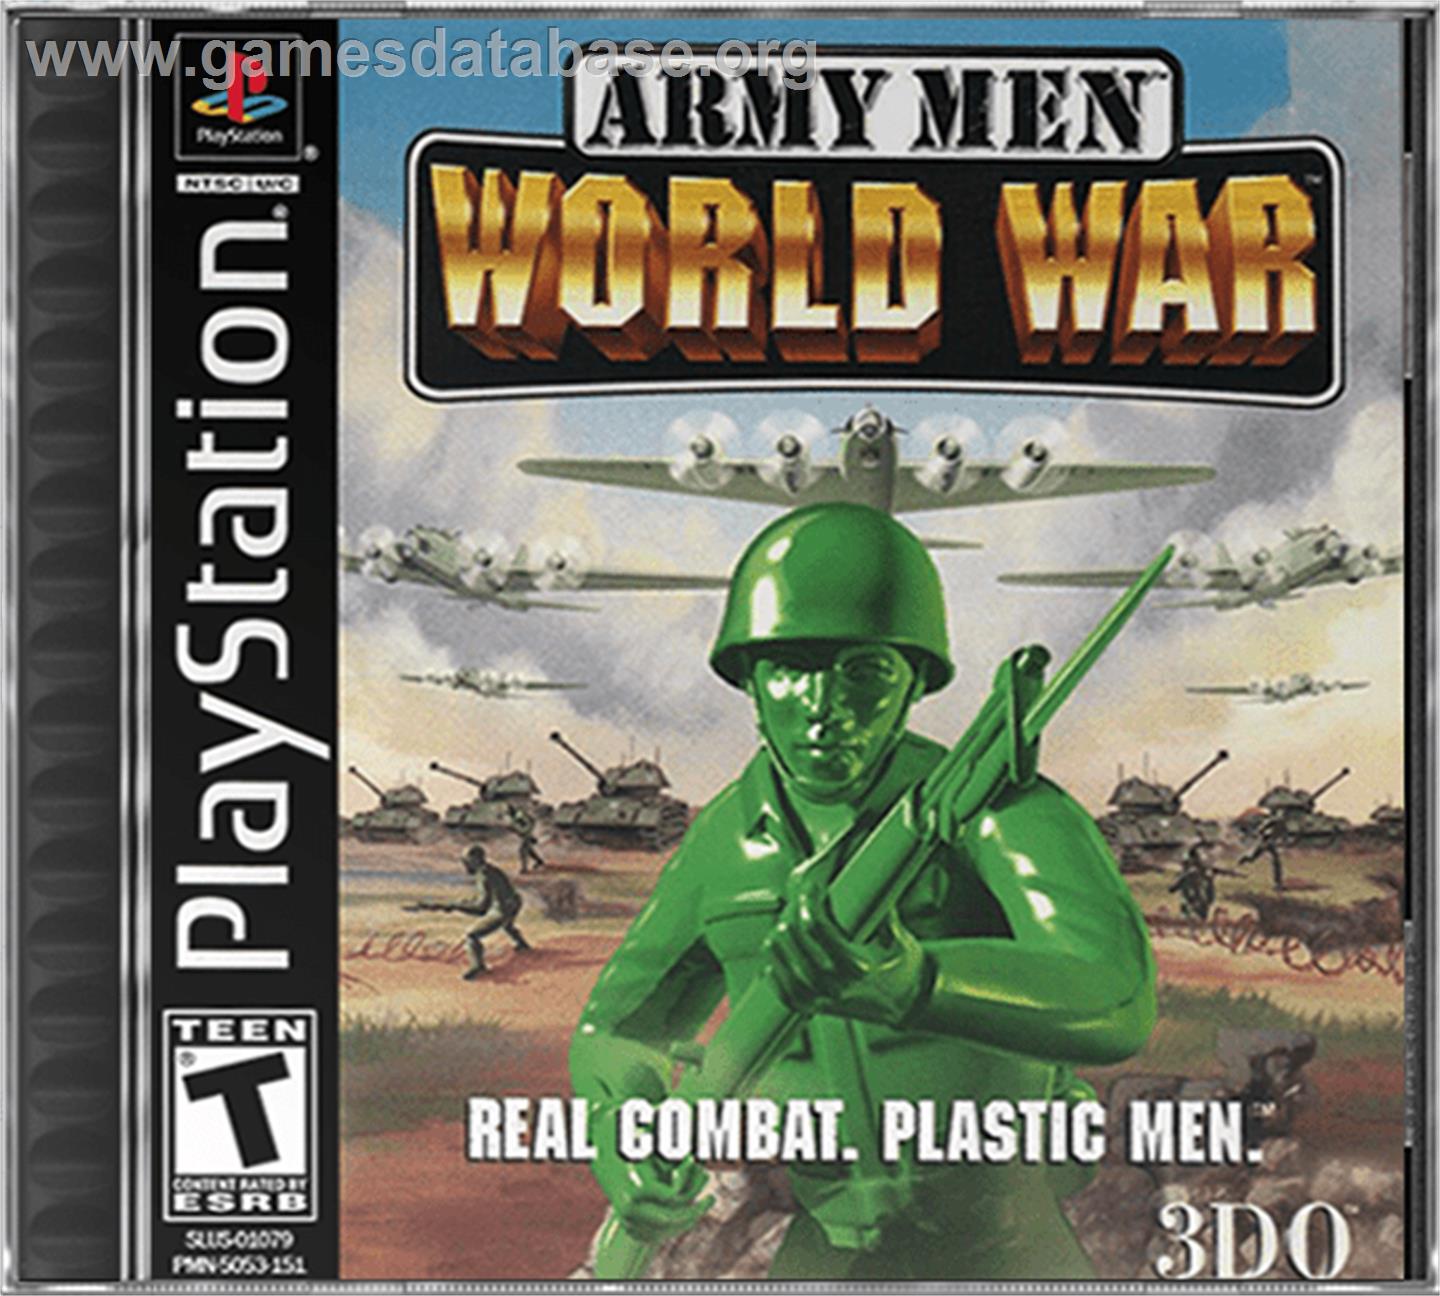 Army Men: World War - Sony Playstation - Artwork - Box